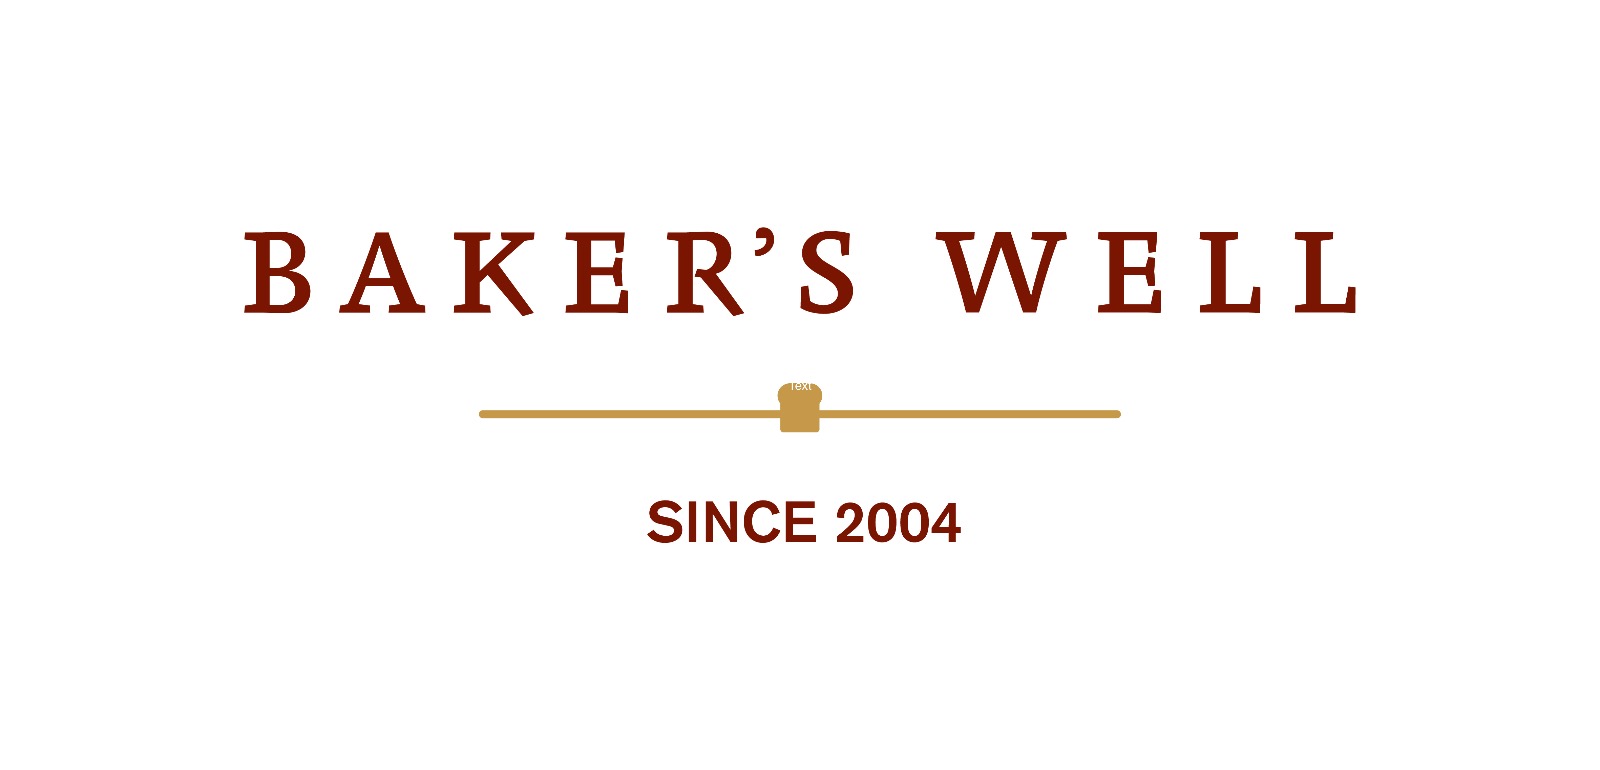 Baker's Well company logo